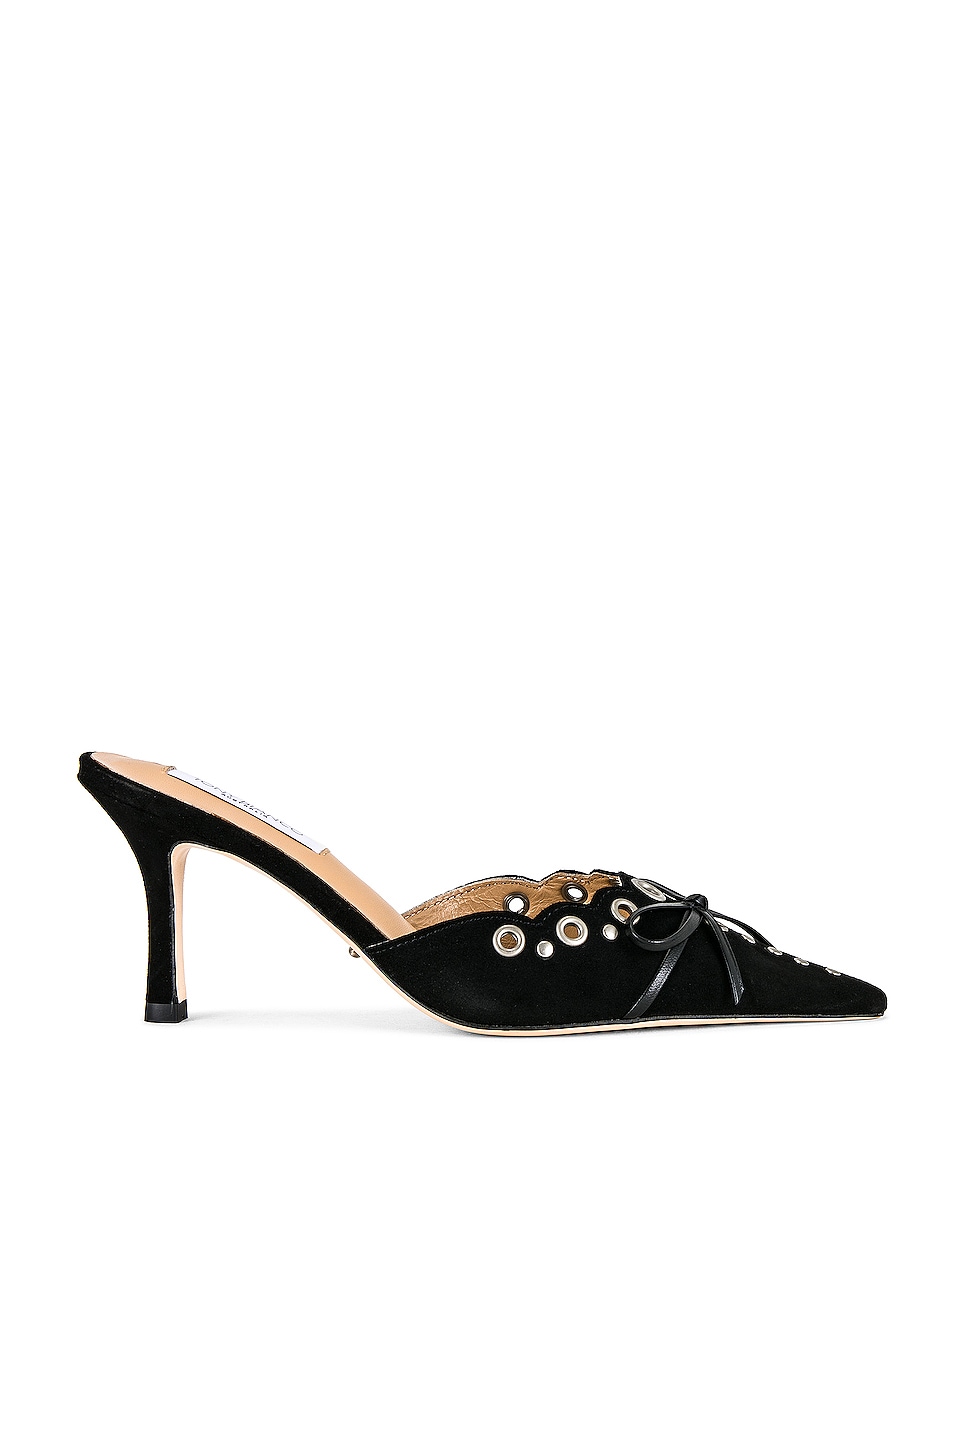 Skye Black Suede Heels by Midas | Shop Online at Midas